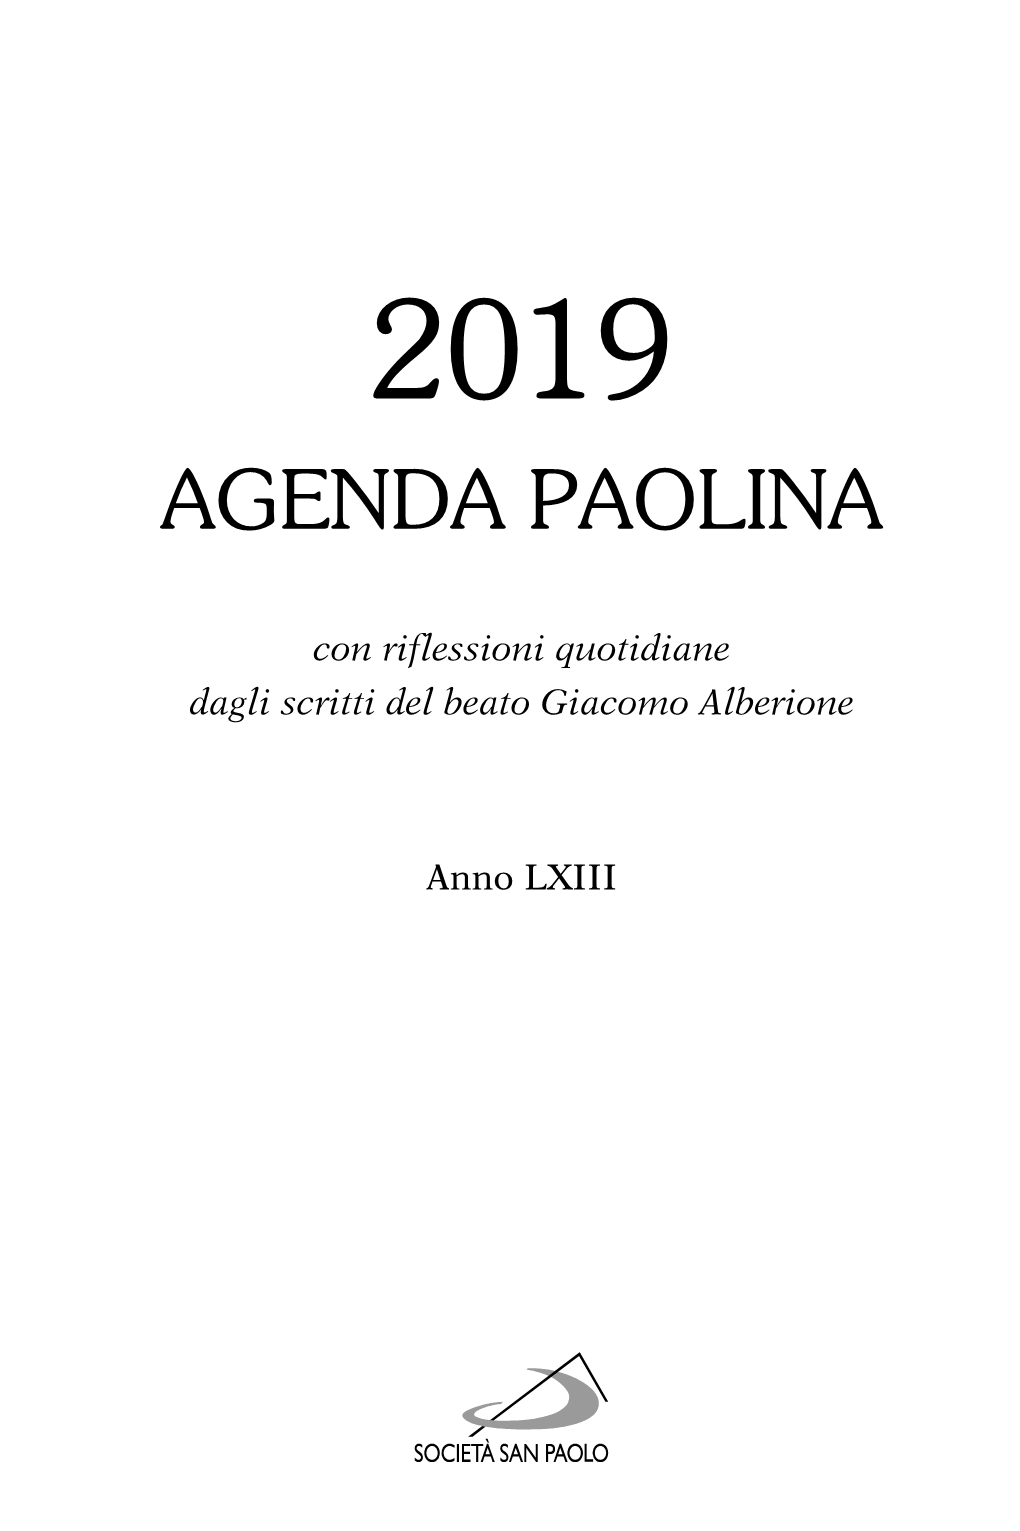 Agenda Paolina